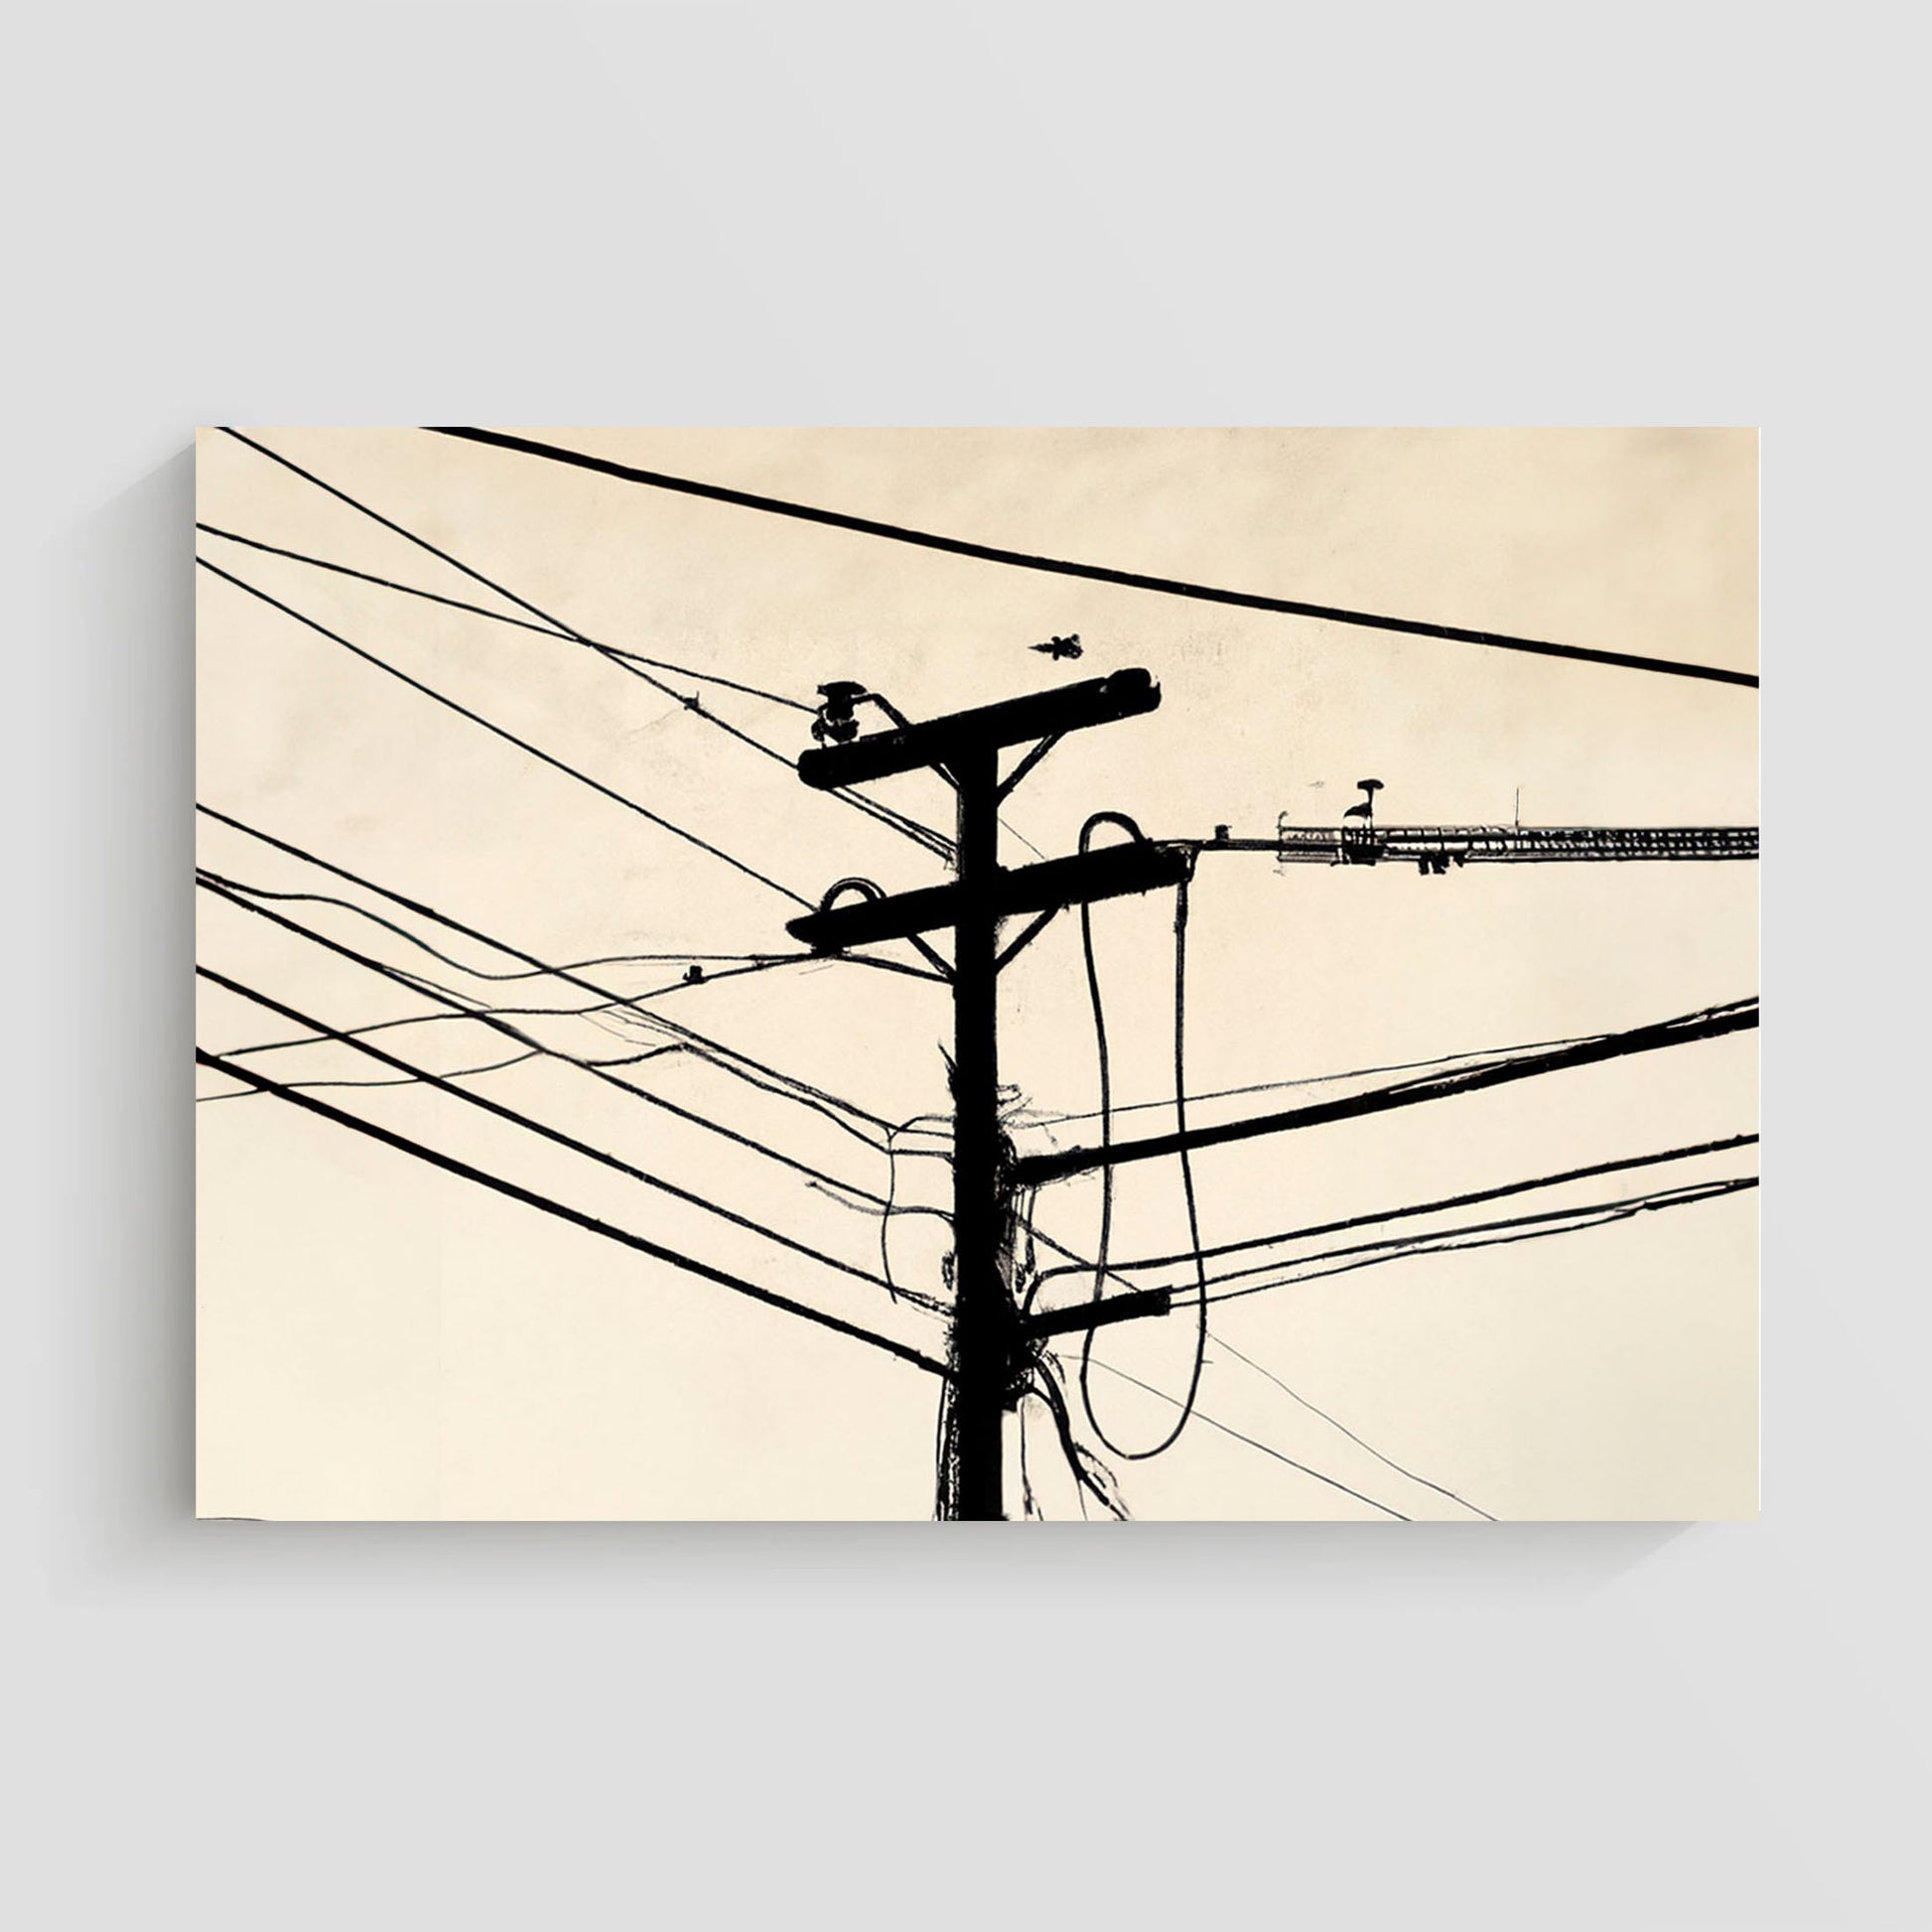 Imagen artística de un poste de electricidad con cables en silueta negra sobre un fondo beige.